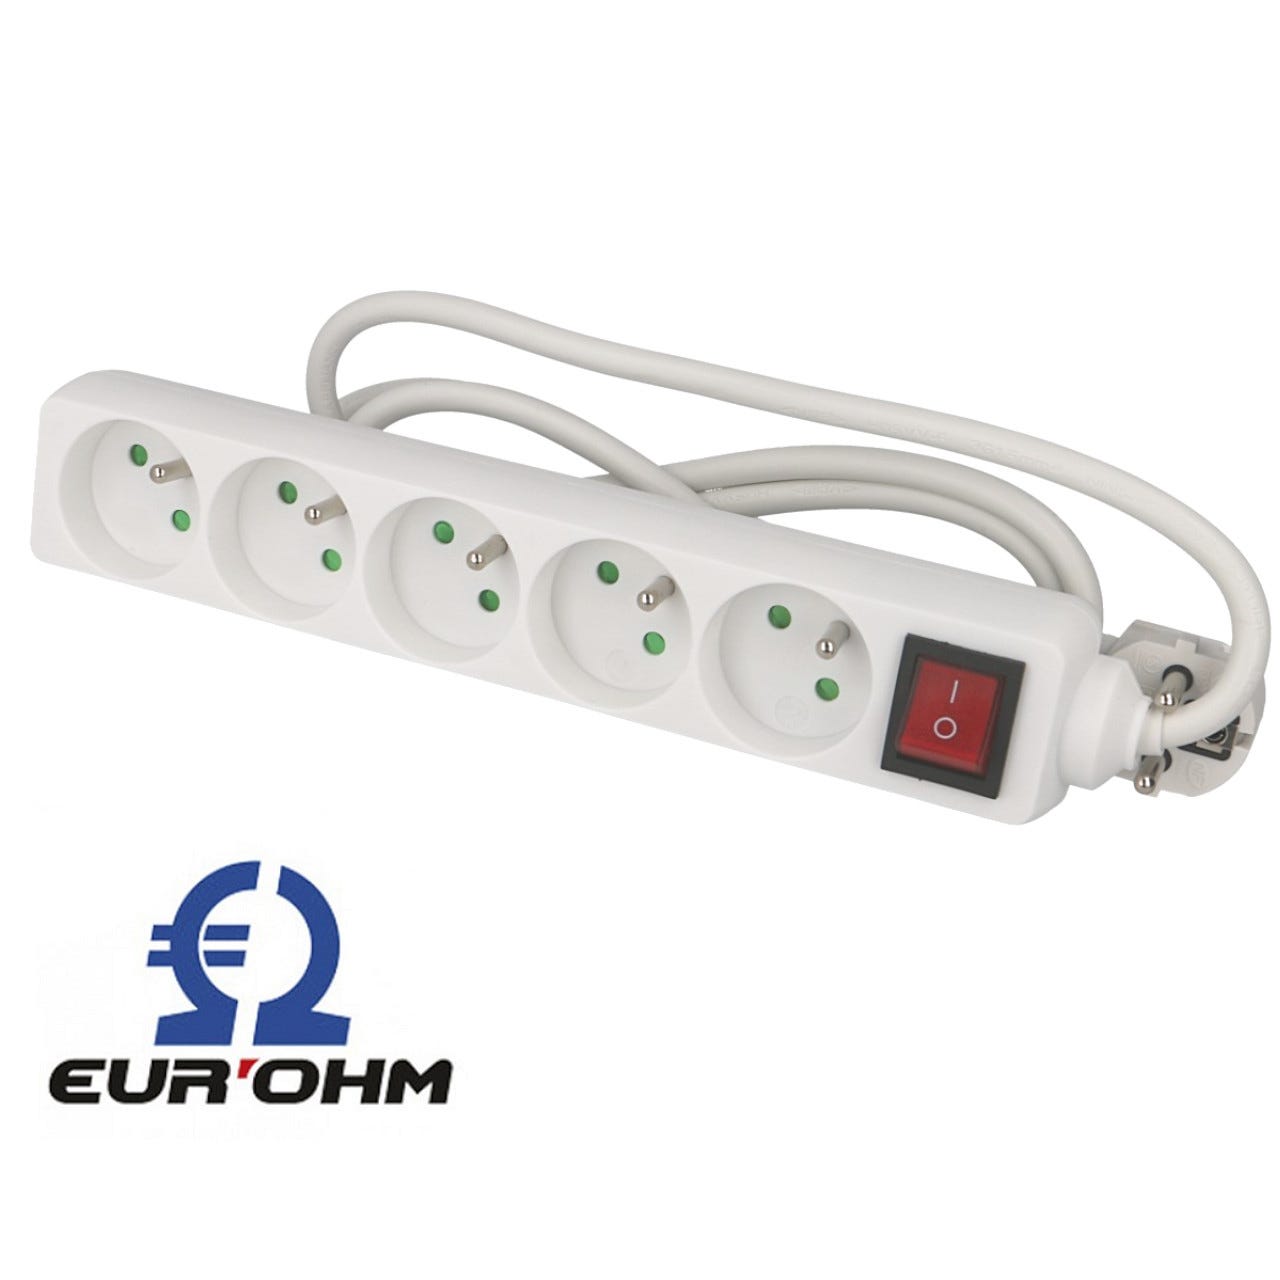 Multiprise 5 prises avec câble 1m avec interrupteur Eur'ohm 1